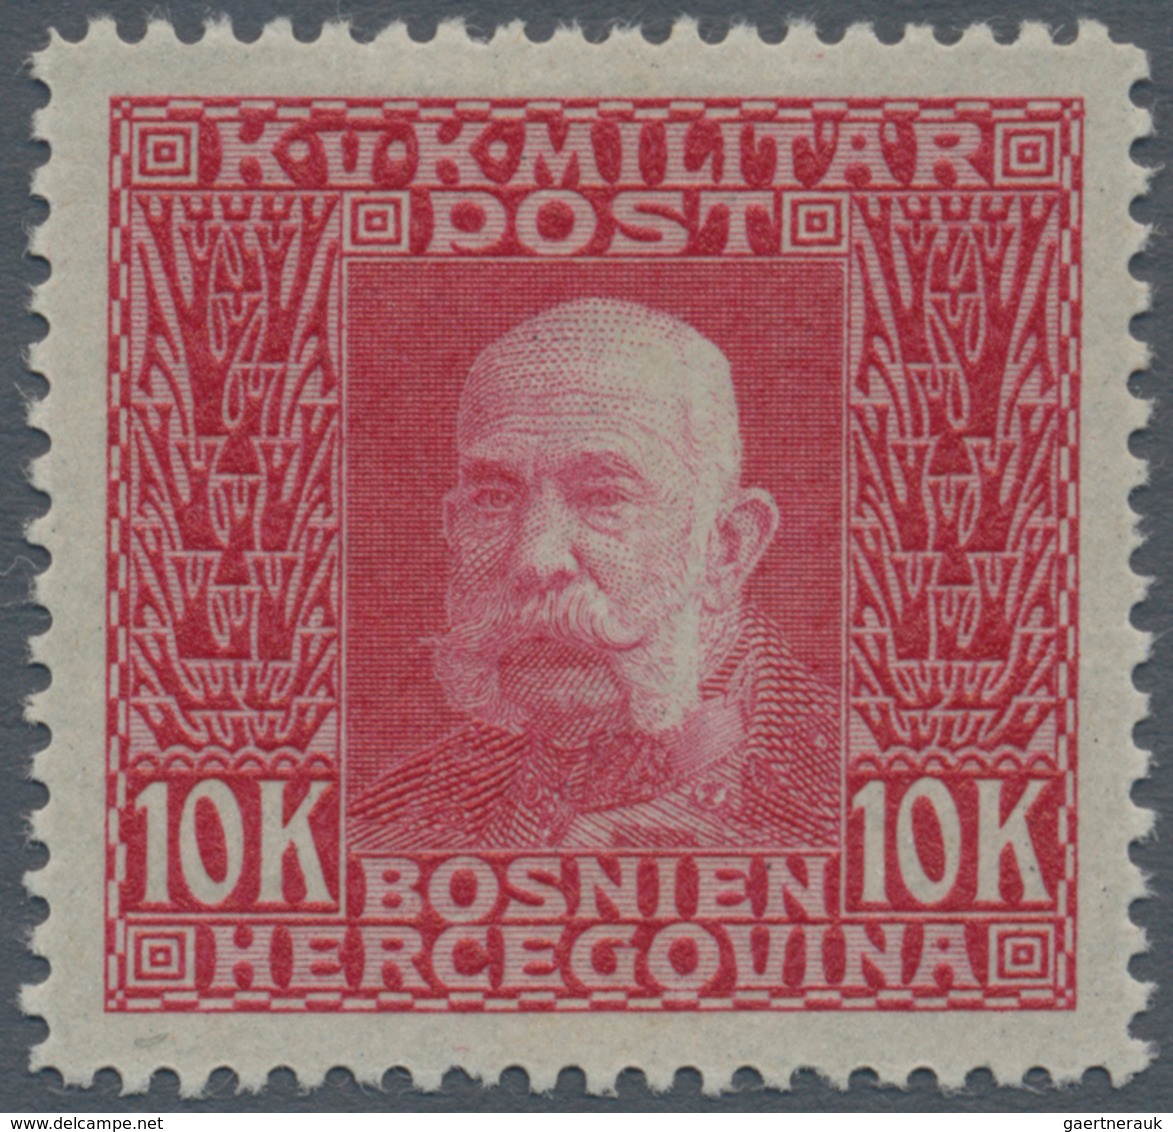 Österreich - Verrechnungsmarken: 1914, Freimarken Kaiser Franz Joseph, 10 Kr. Höchstwert, Fünf Probe - Steuermarken